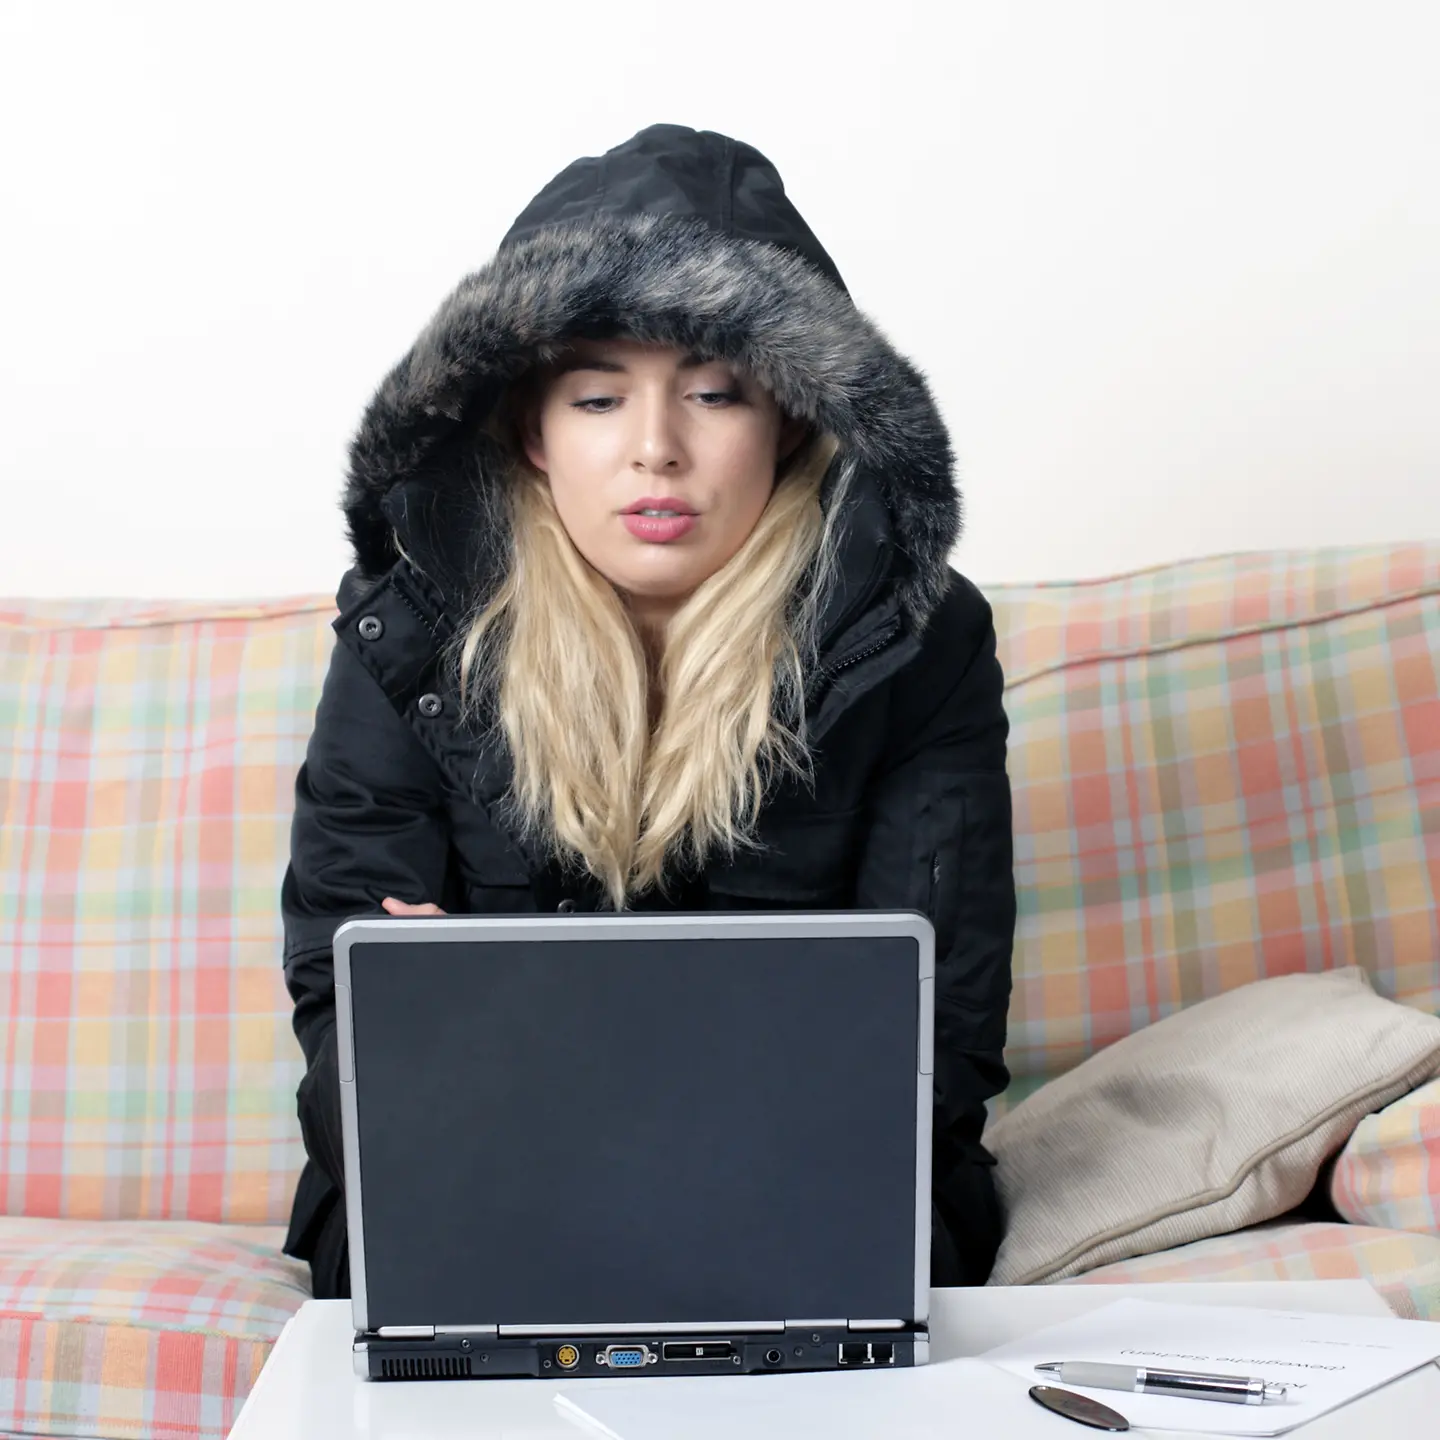 Eine Frau sitzt im waren Mantel in ihrer Wohnung auf einem Sofa vor ihrem Laptop.